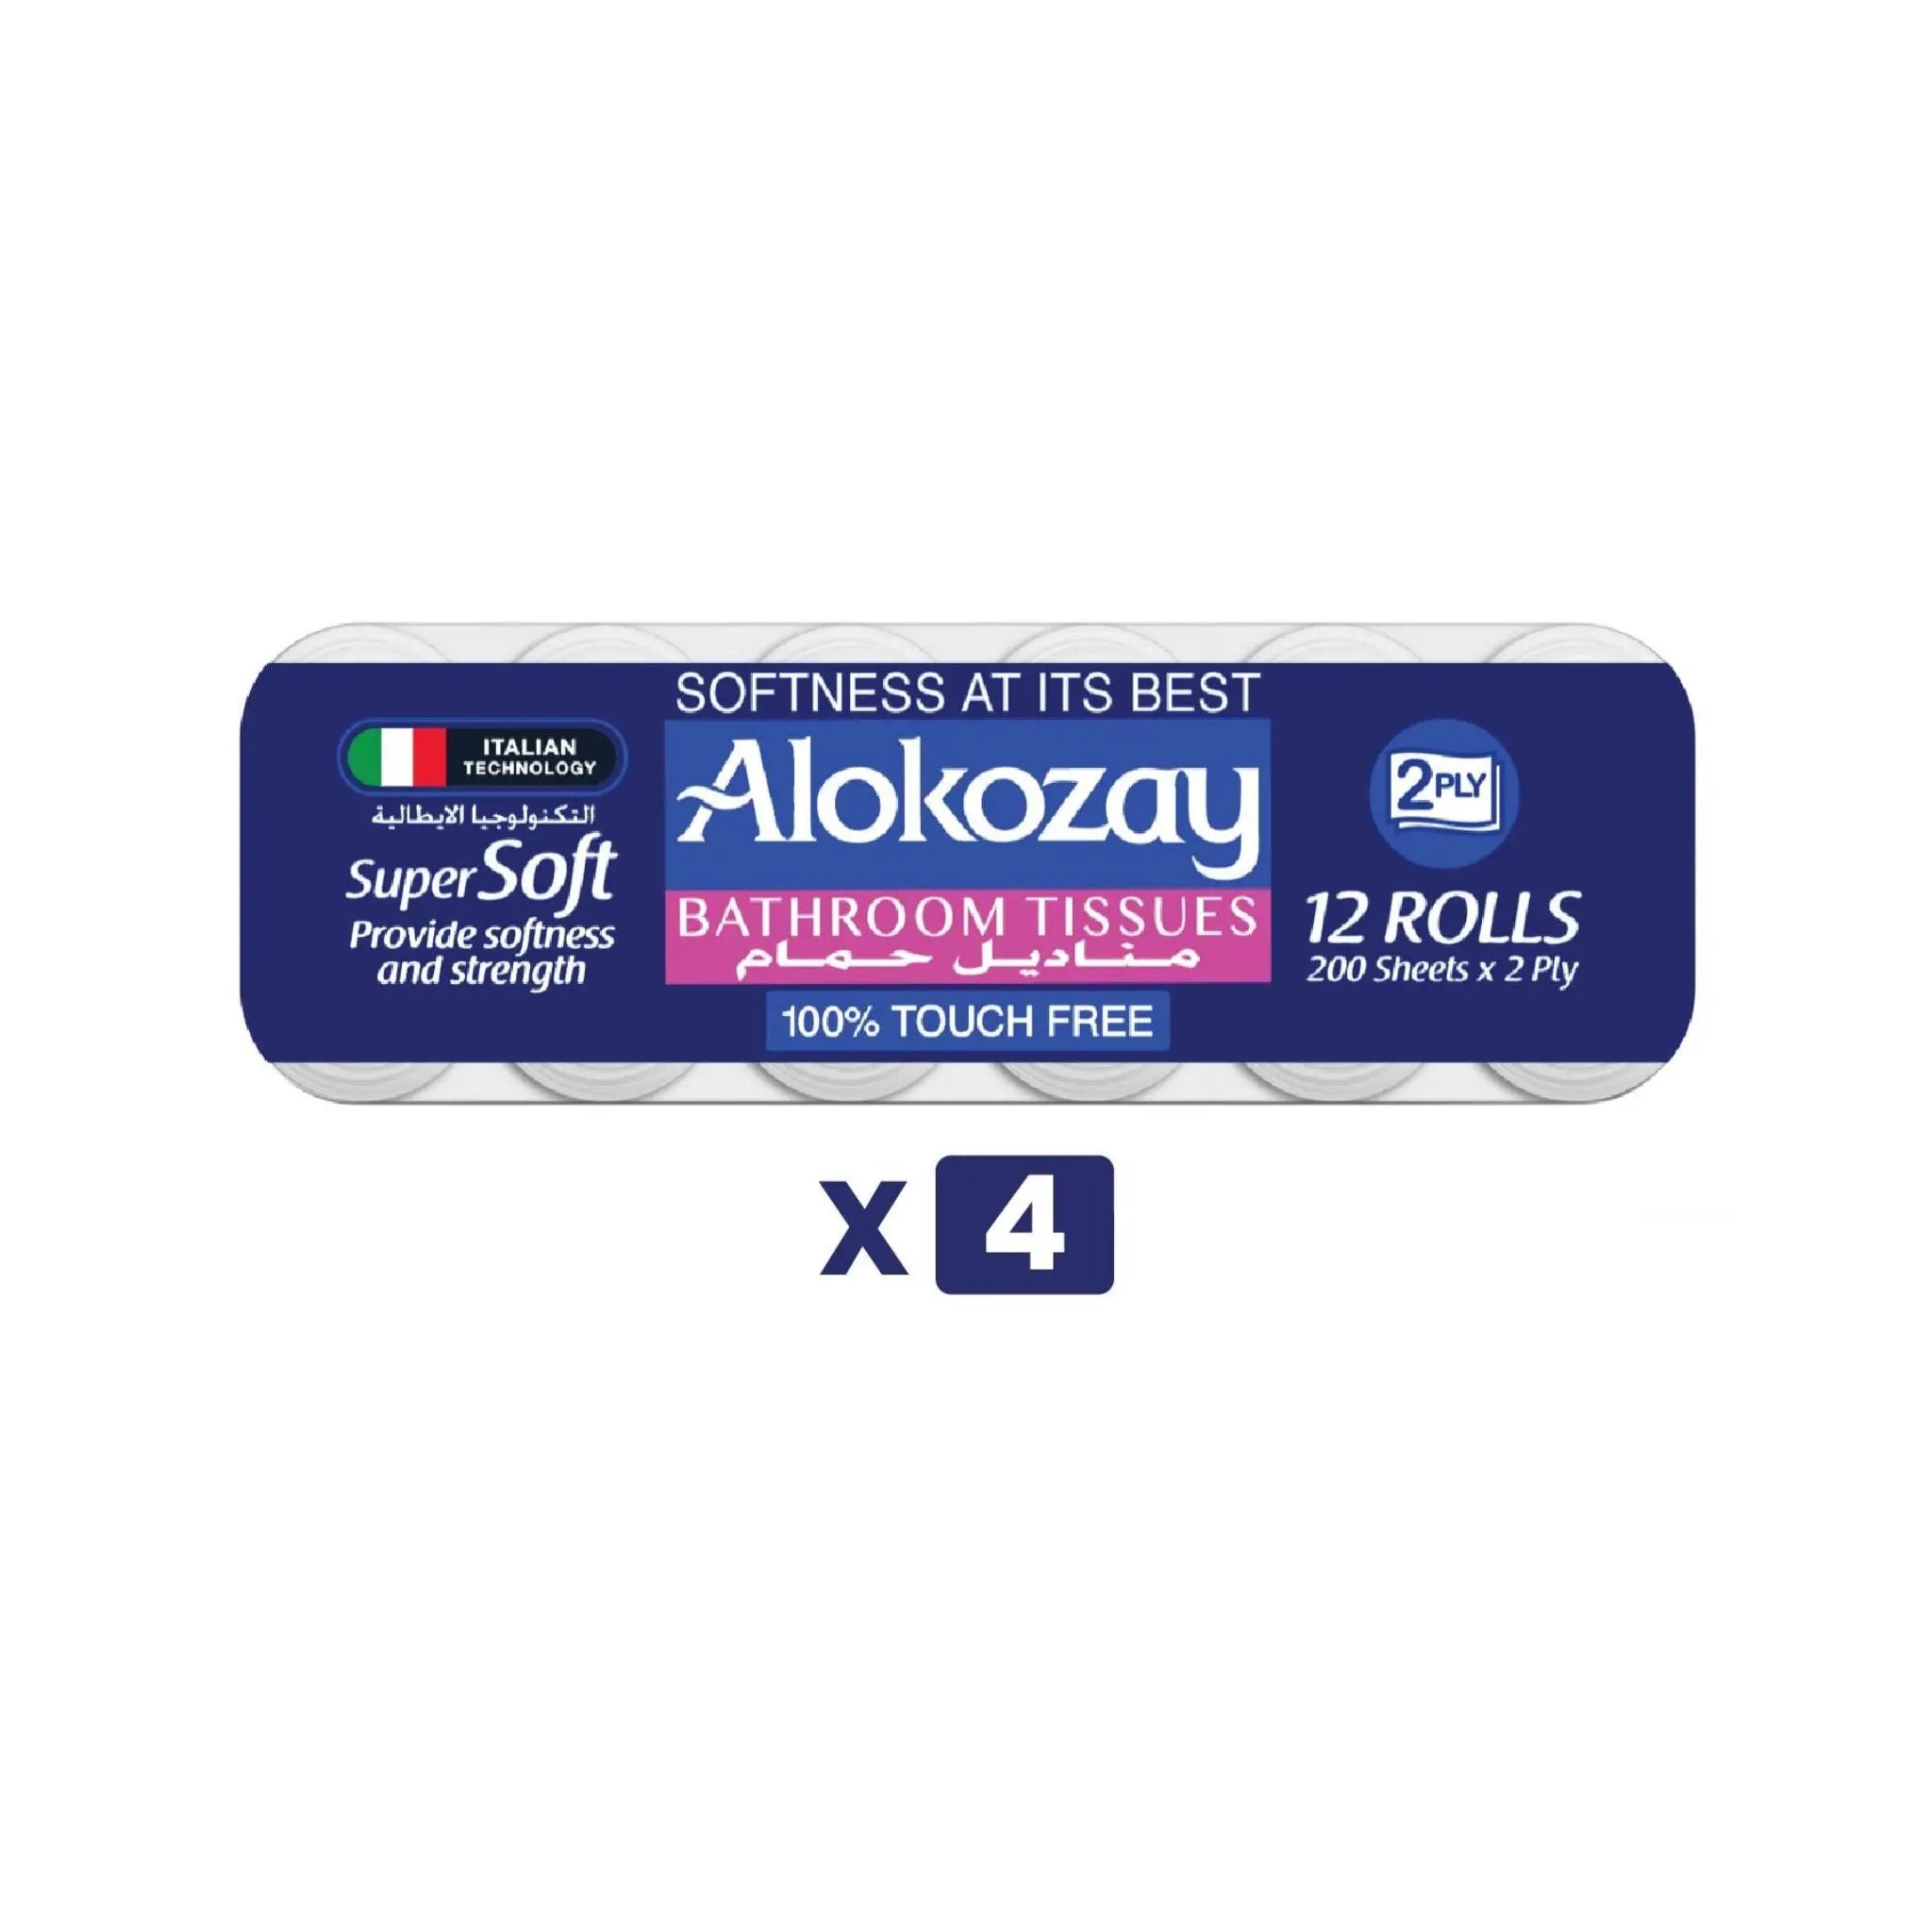 Alokozay Super Soft Bathroom Tissue - (12 Rolls x 2 ply x 200 Sheets) 4 packs per carton Marino.AE